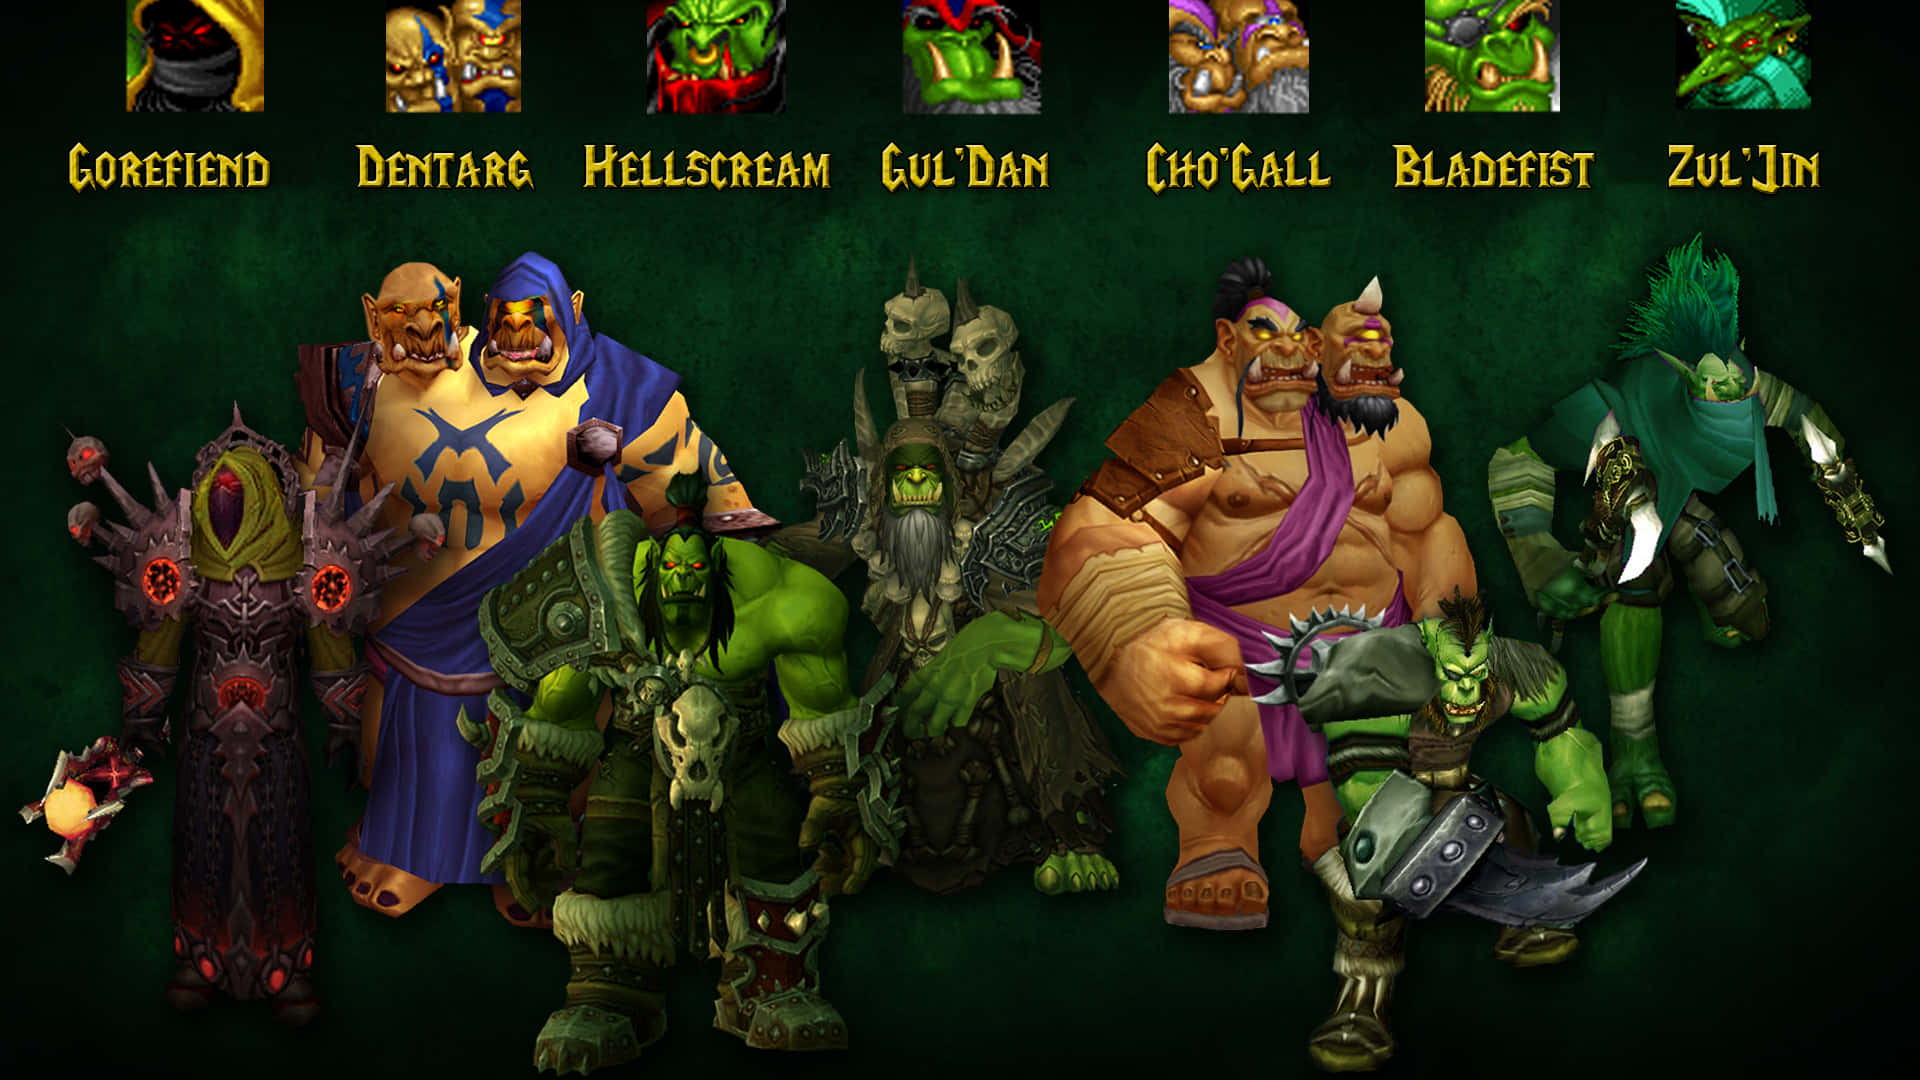 Personagensdo Jogo Warcraft 2 Papel de Parede